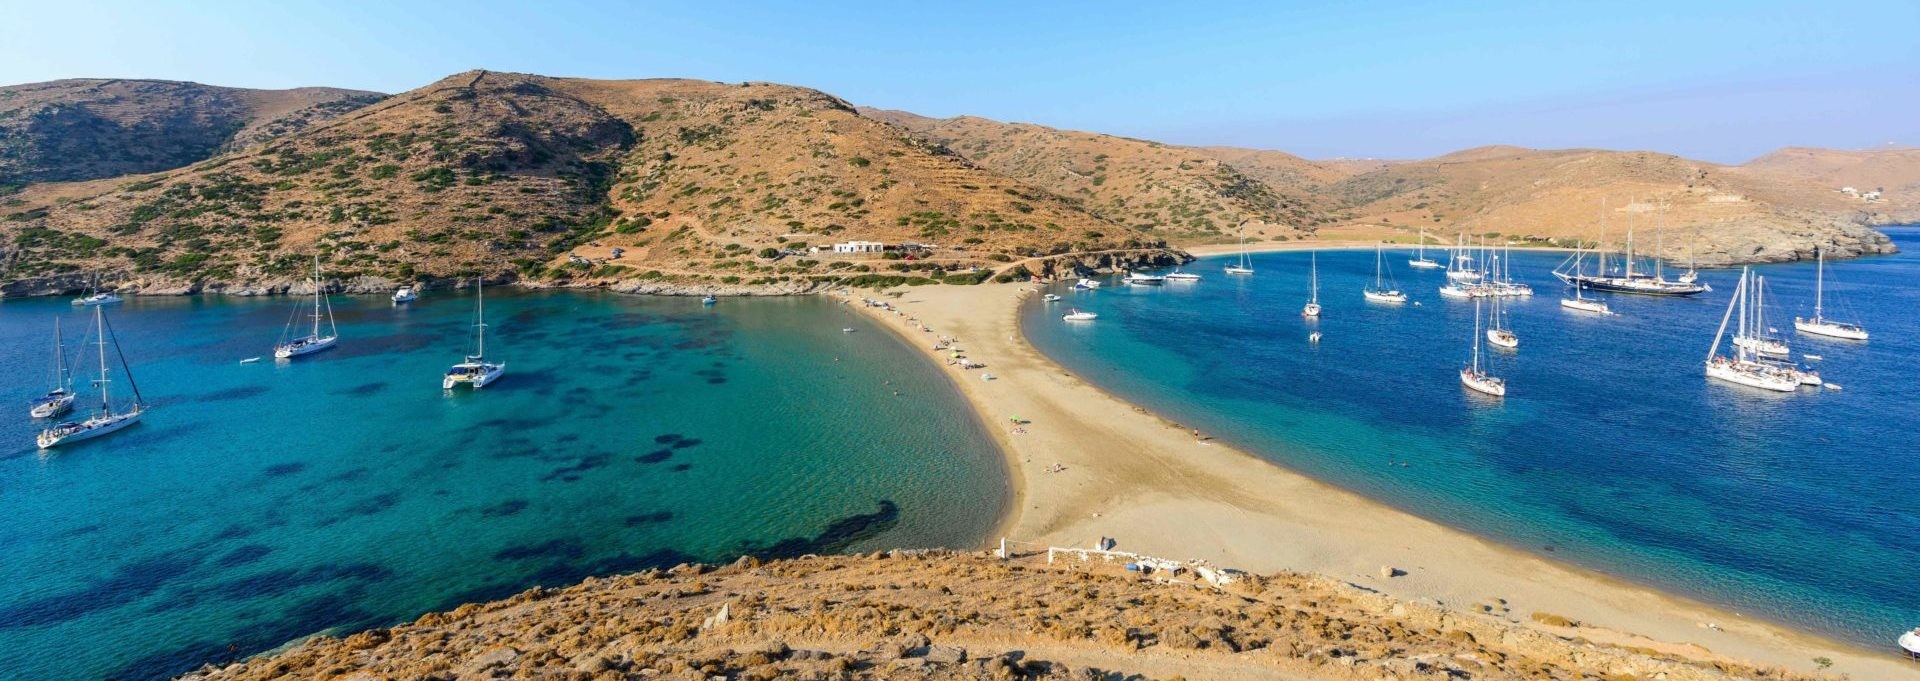 Vela in Grecia: le Cicladi e il Golfo Saronico